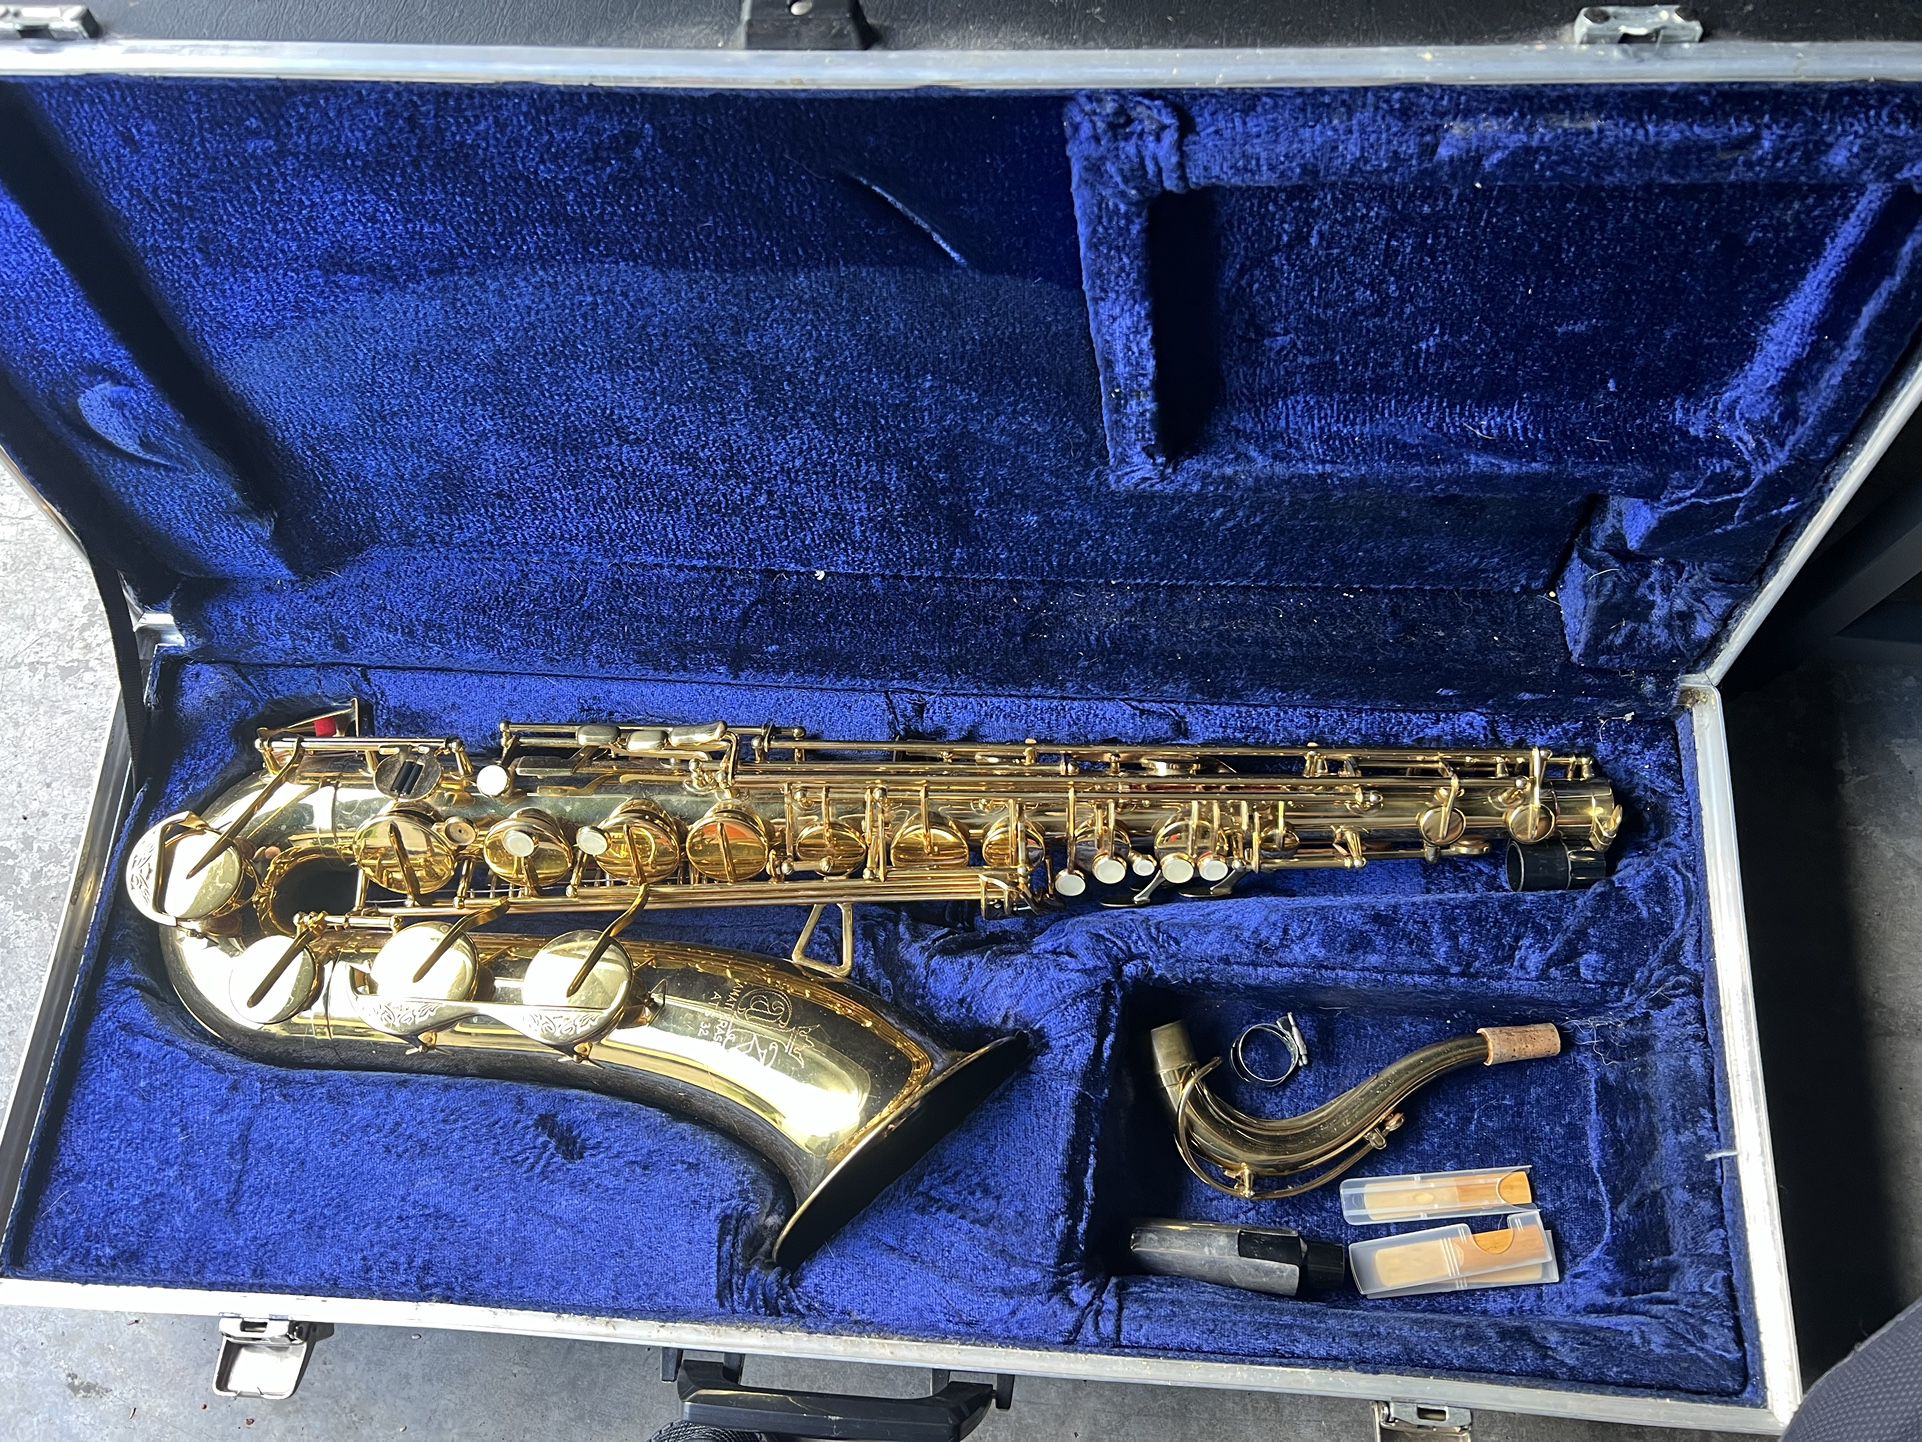 Amati Ats 32 Saxophone